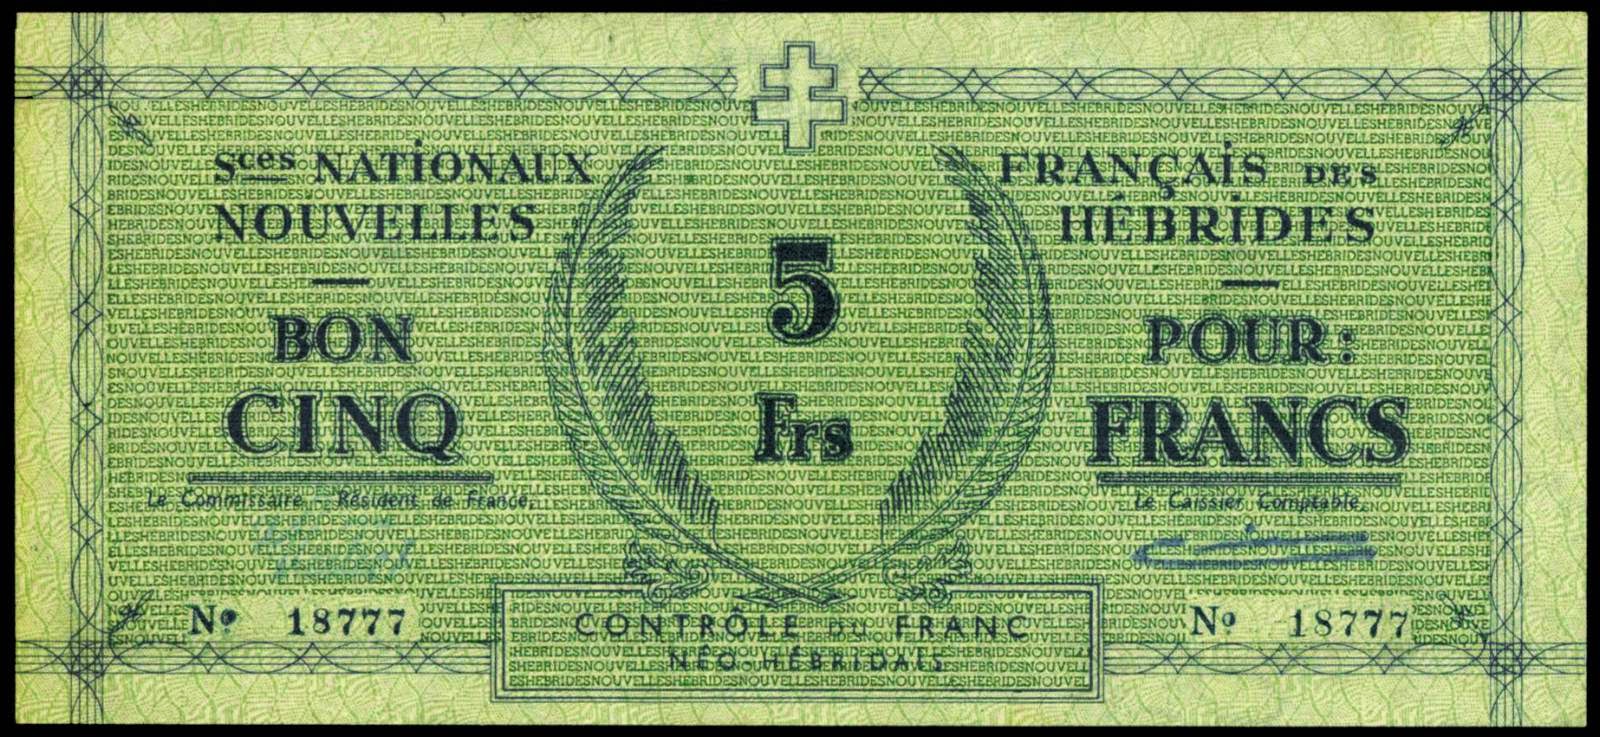 New Hebrides banknotes 5 Francs note 1943